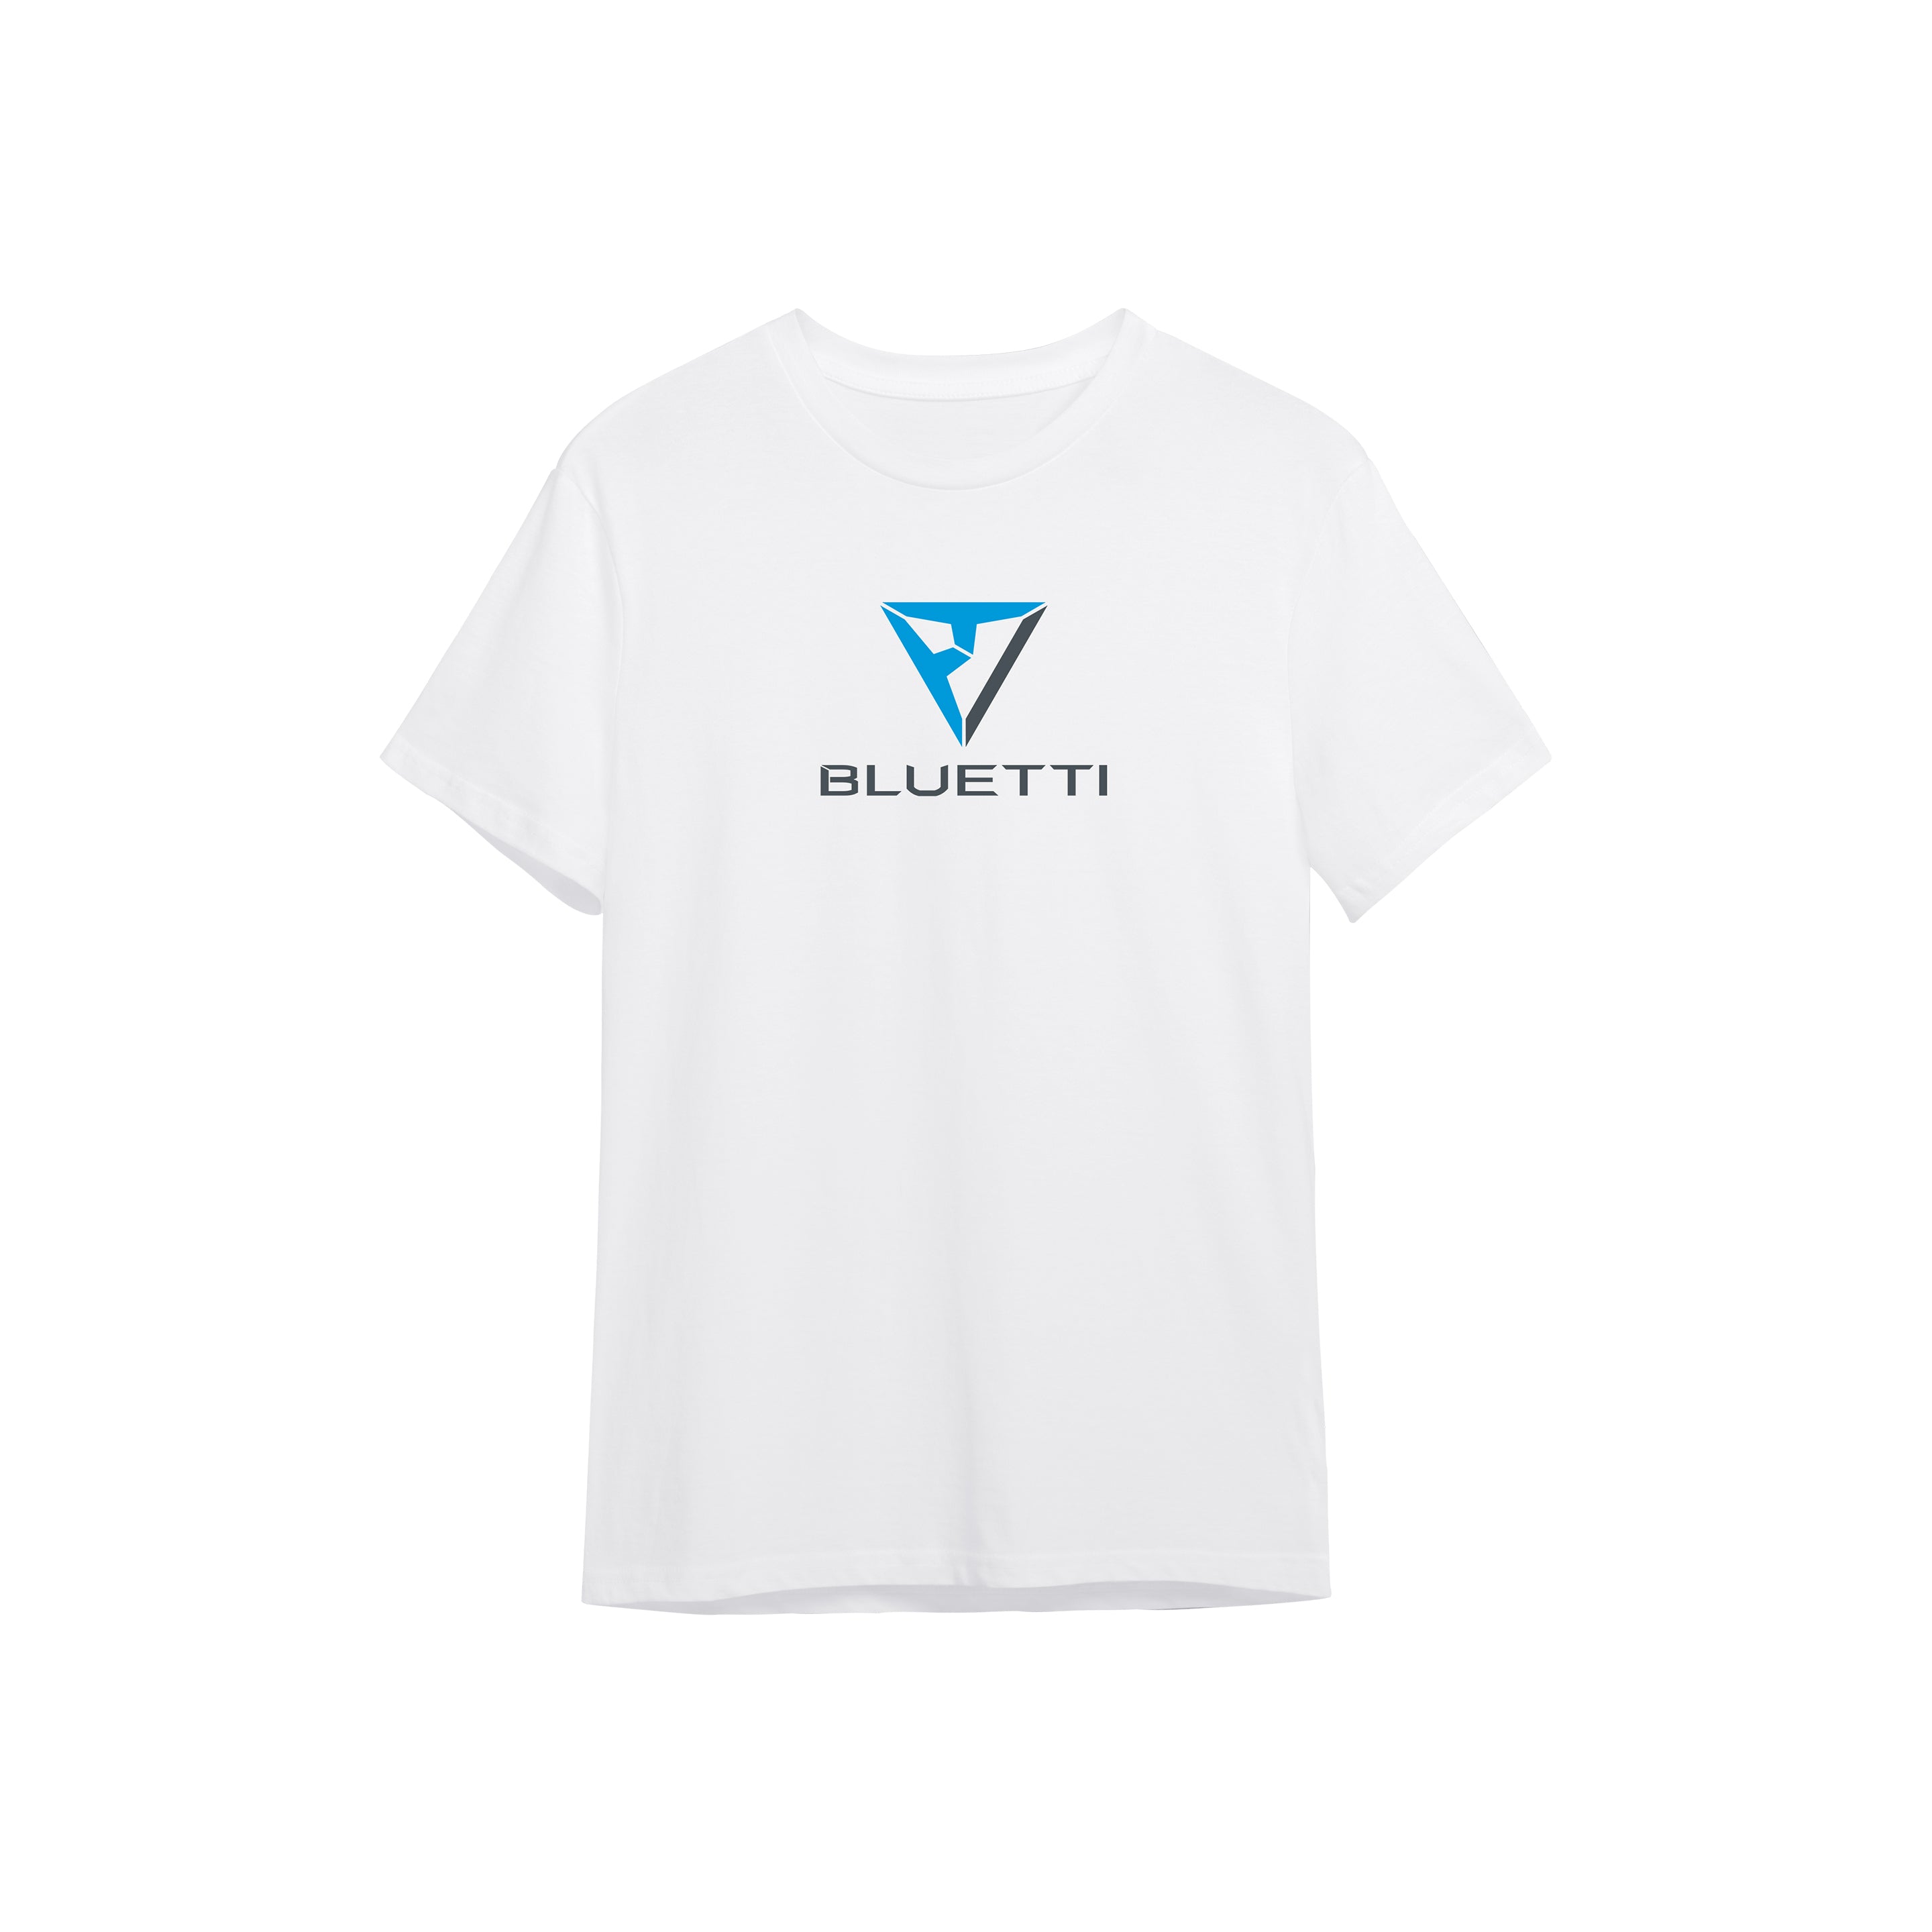 BLUETTI T-shirt, 3XL / White